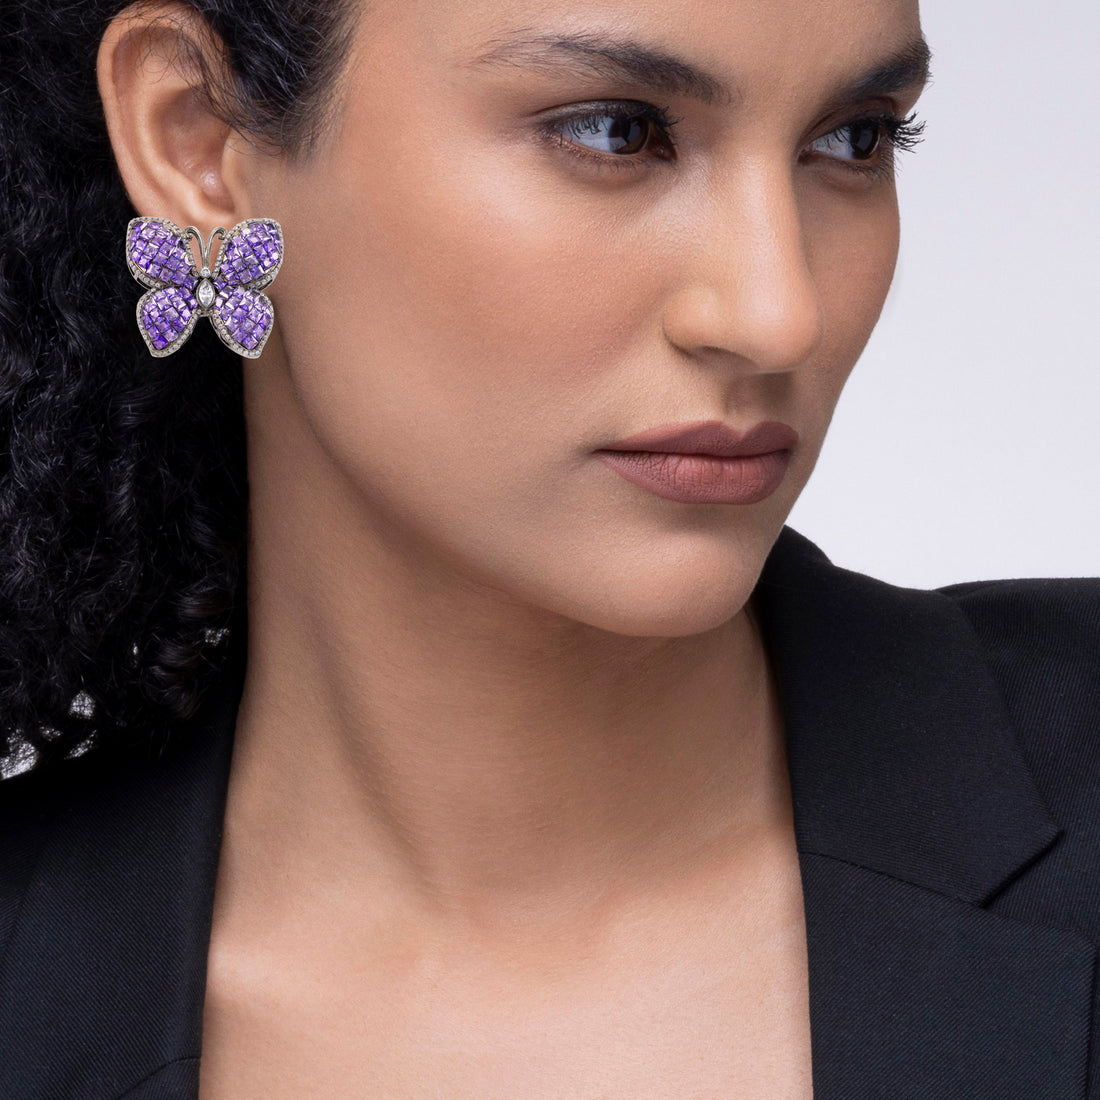 Reimagine PRAO's Butterfly Earrings